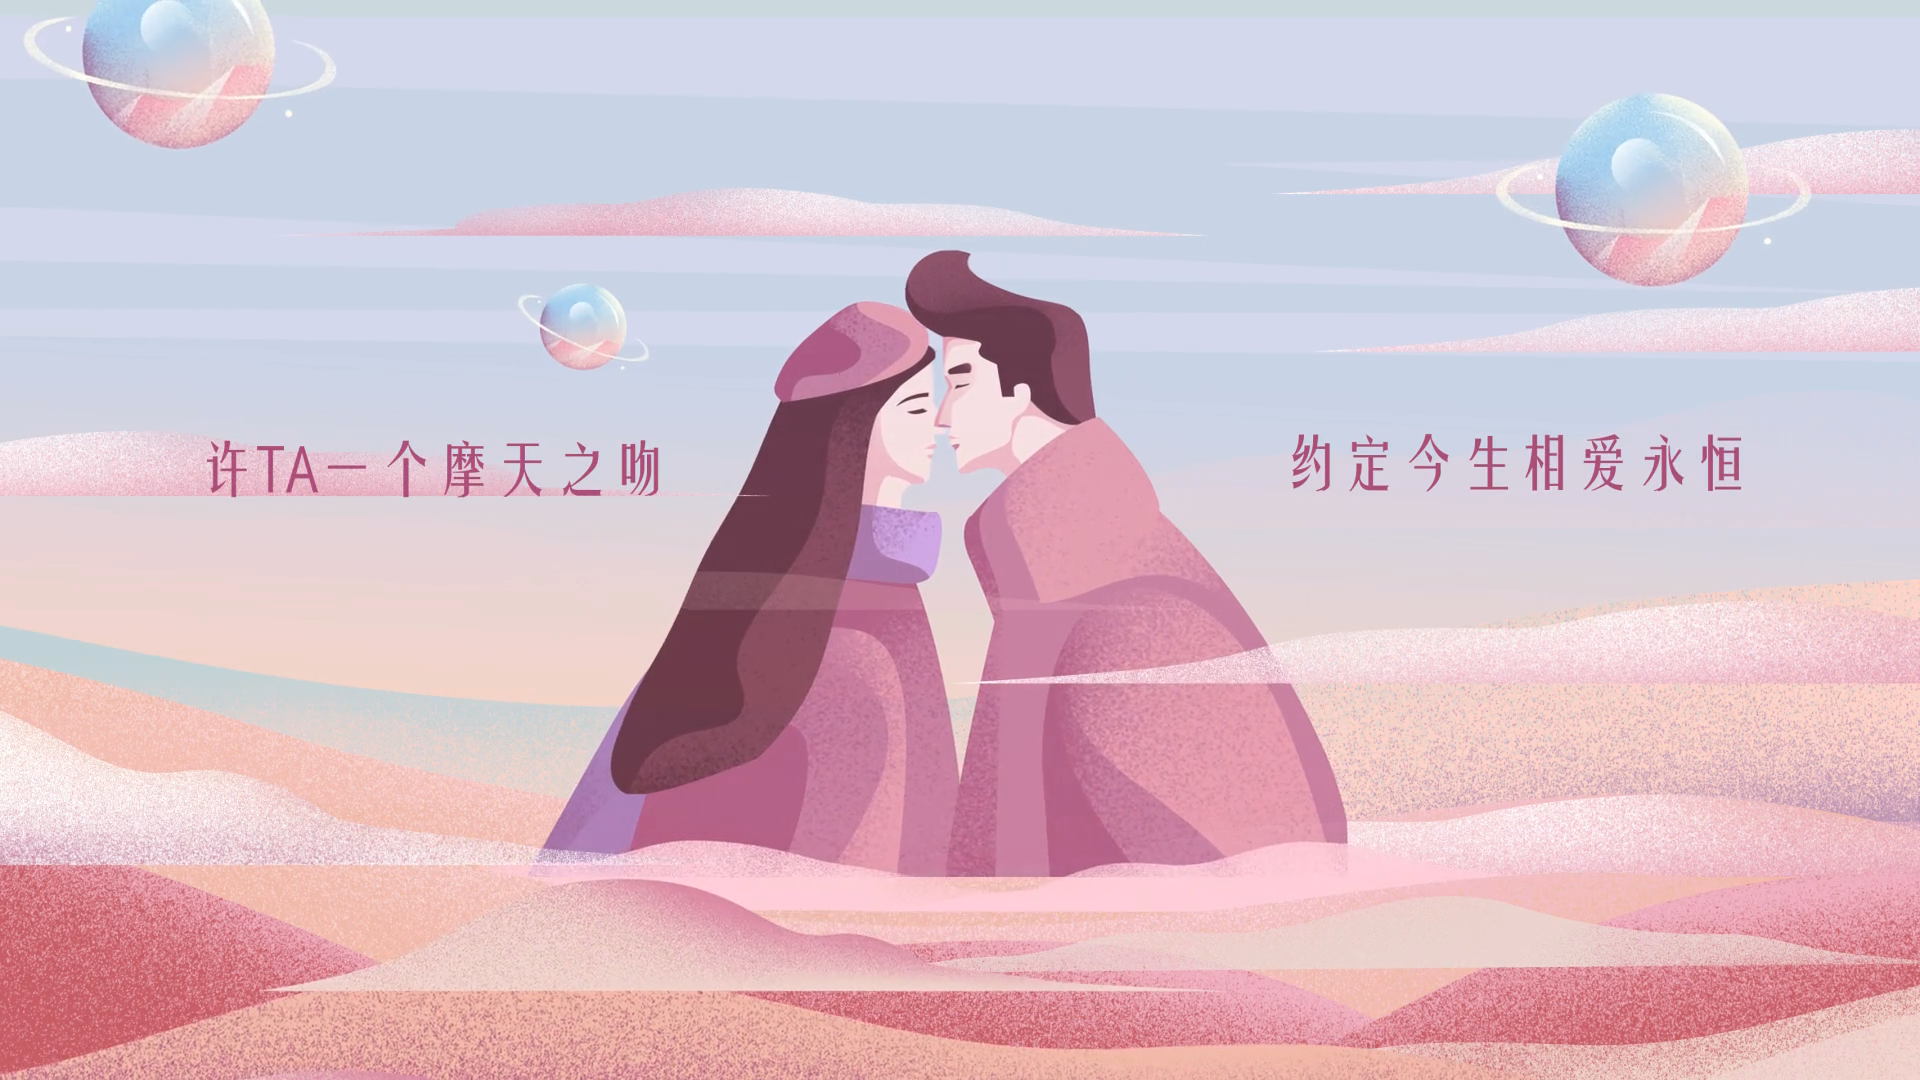 520金伯利钻石宣传片-为爱打卡全球浪漫摩天轮